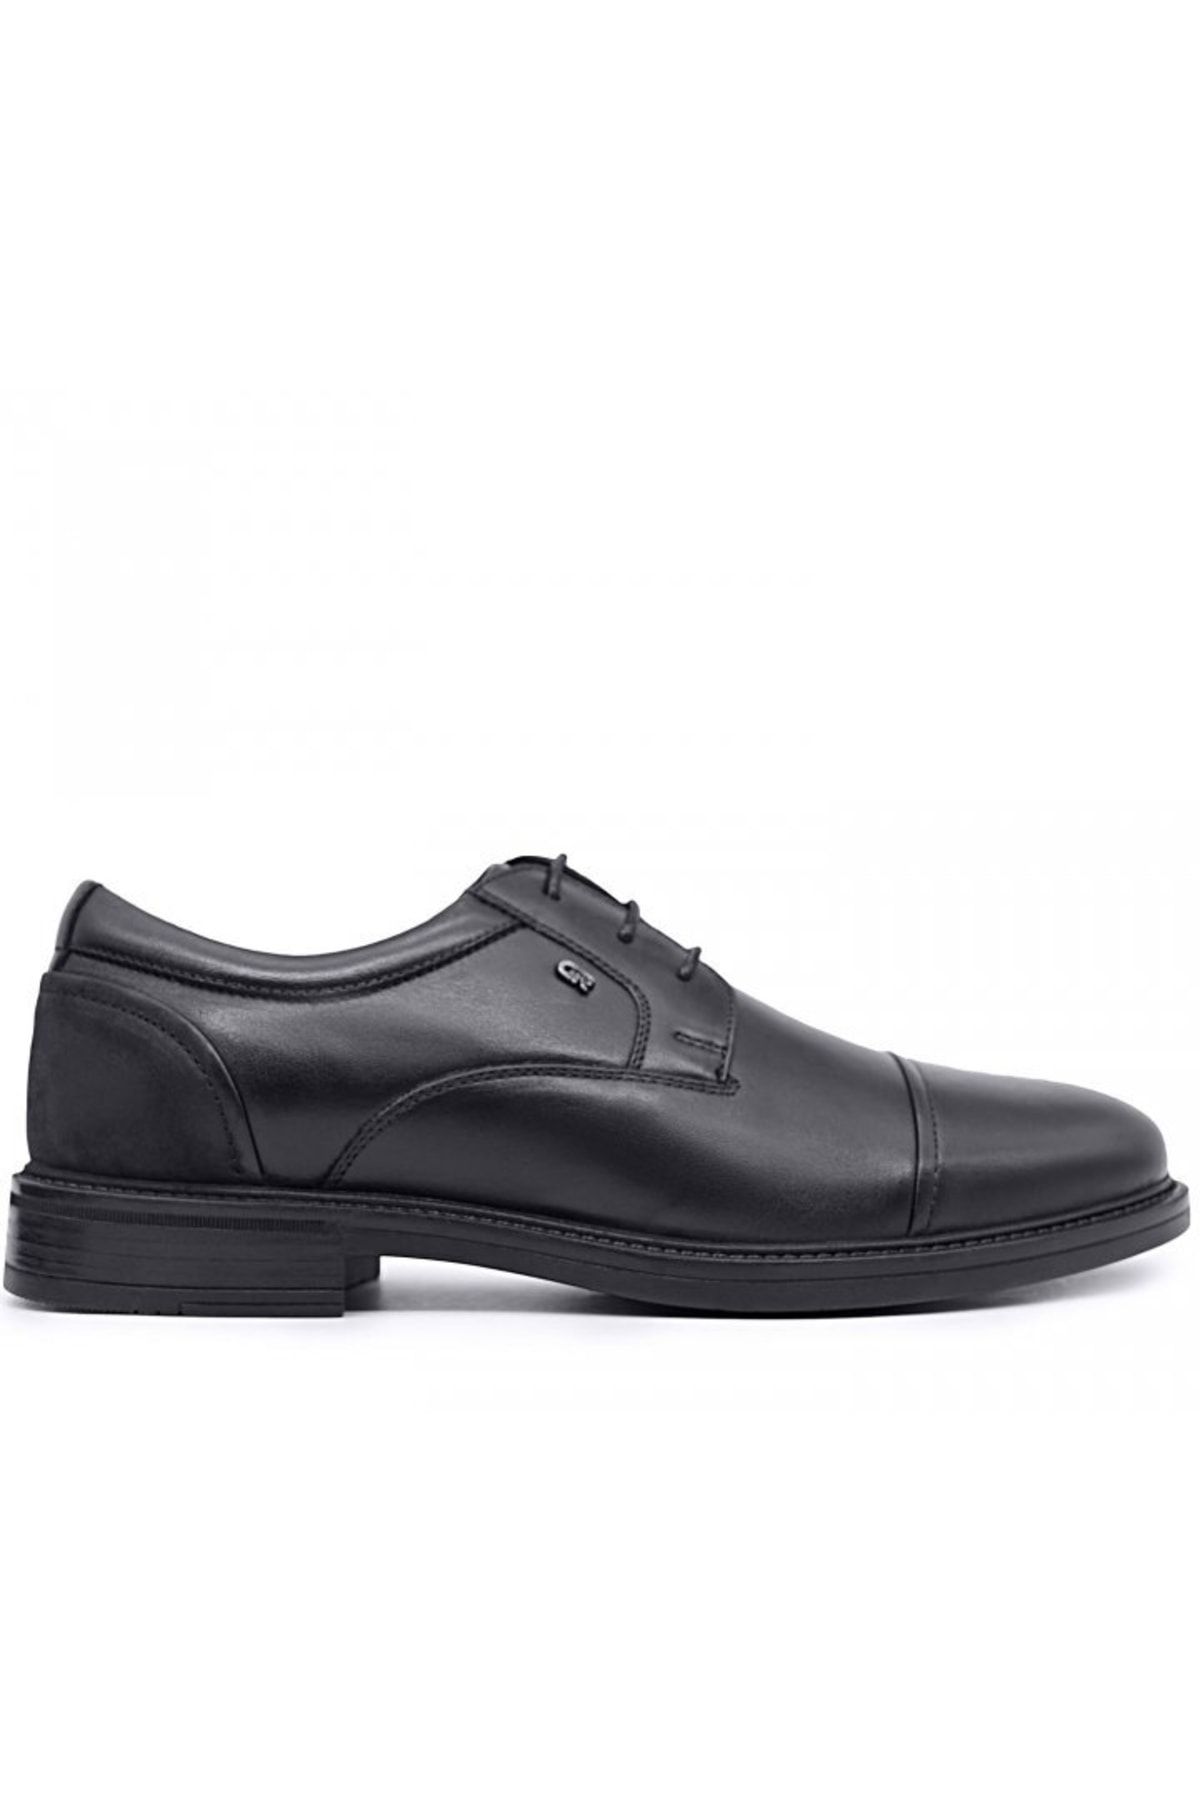 Greyder Siyah Renk Hakiki Deri Kükrlü Iç Ksım Klasik Erkek Ayakkabı